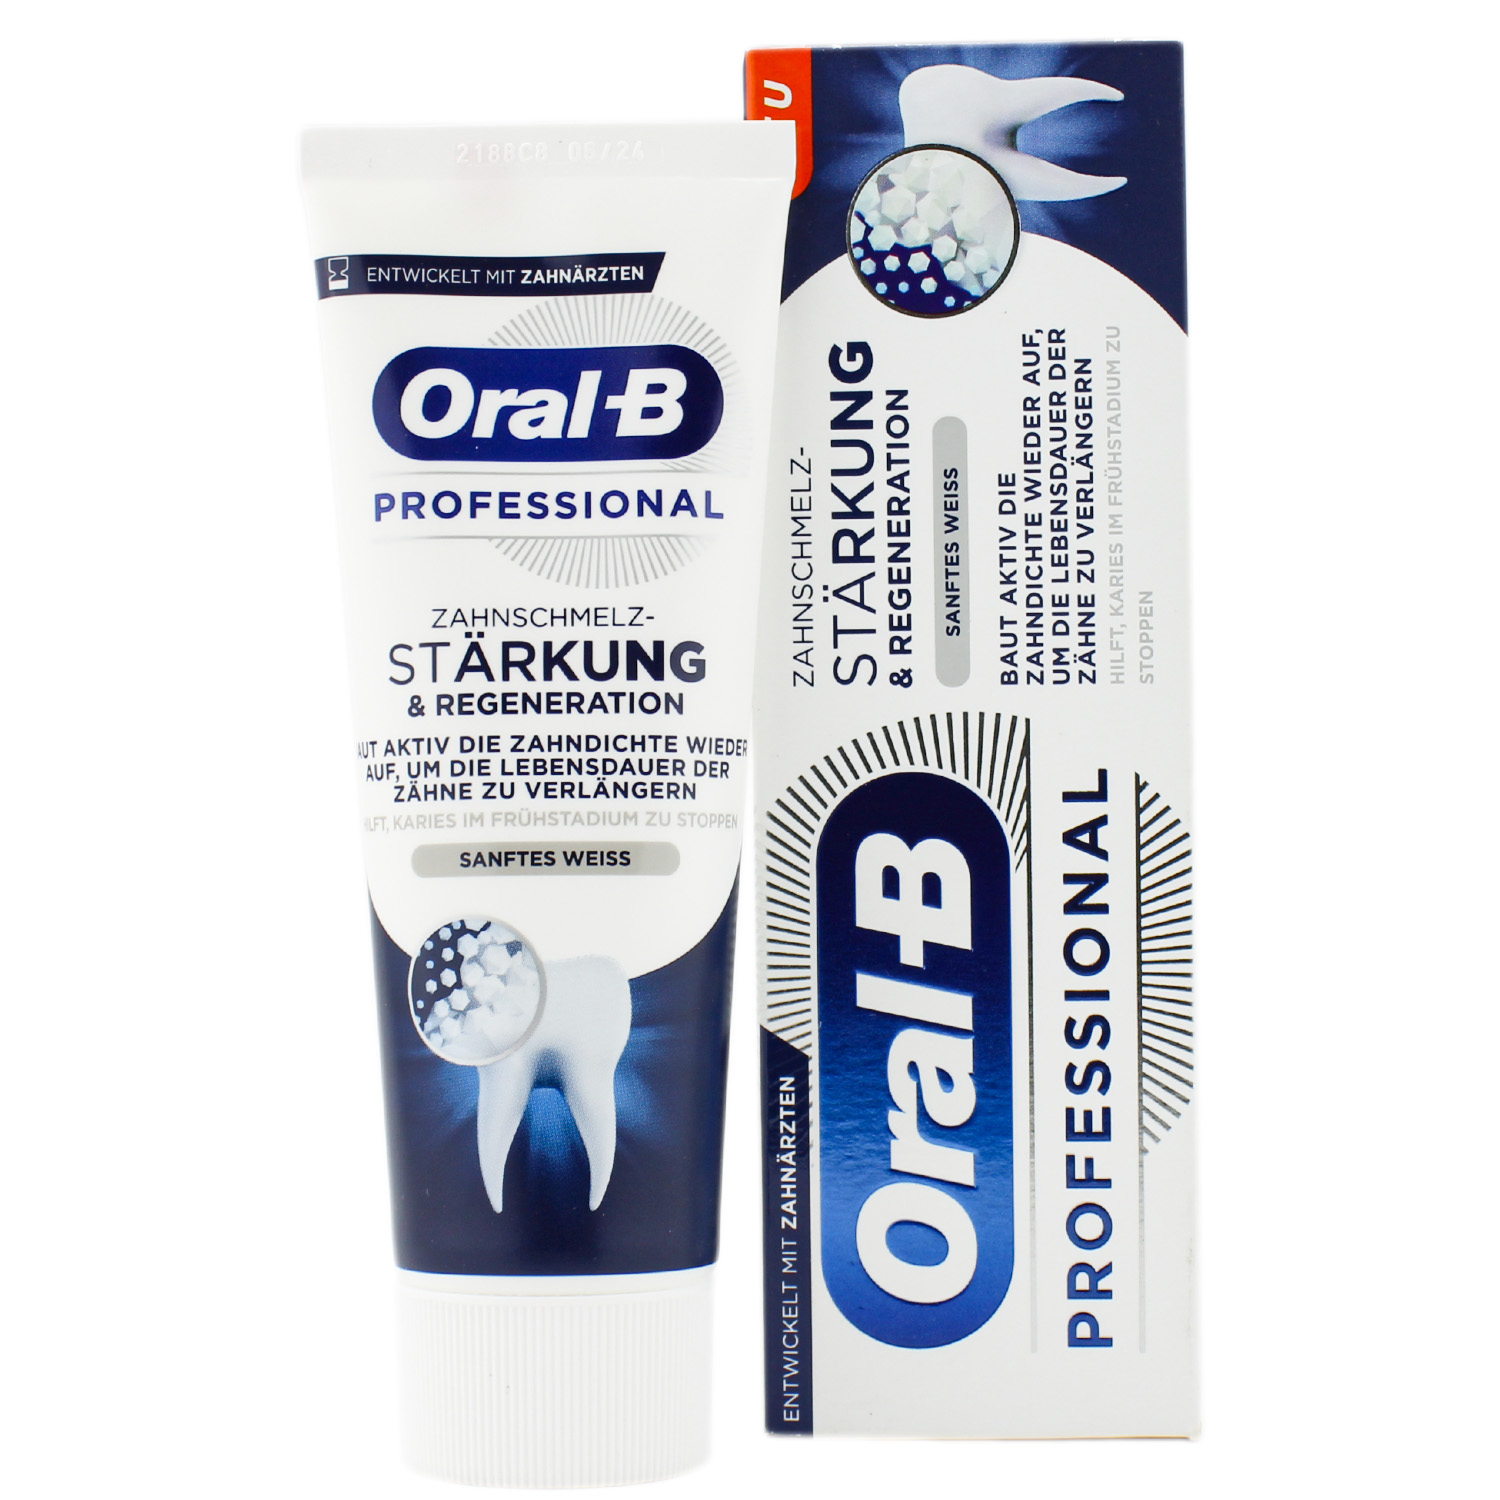 Oral-B Professional Zahnschmelz-Stärkung & Regeneration Zahncreme 75ml